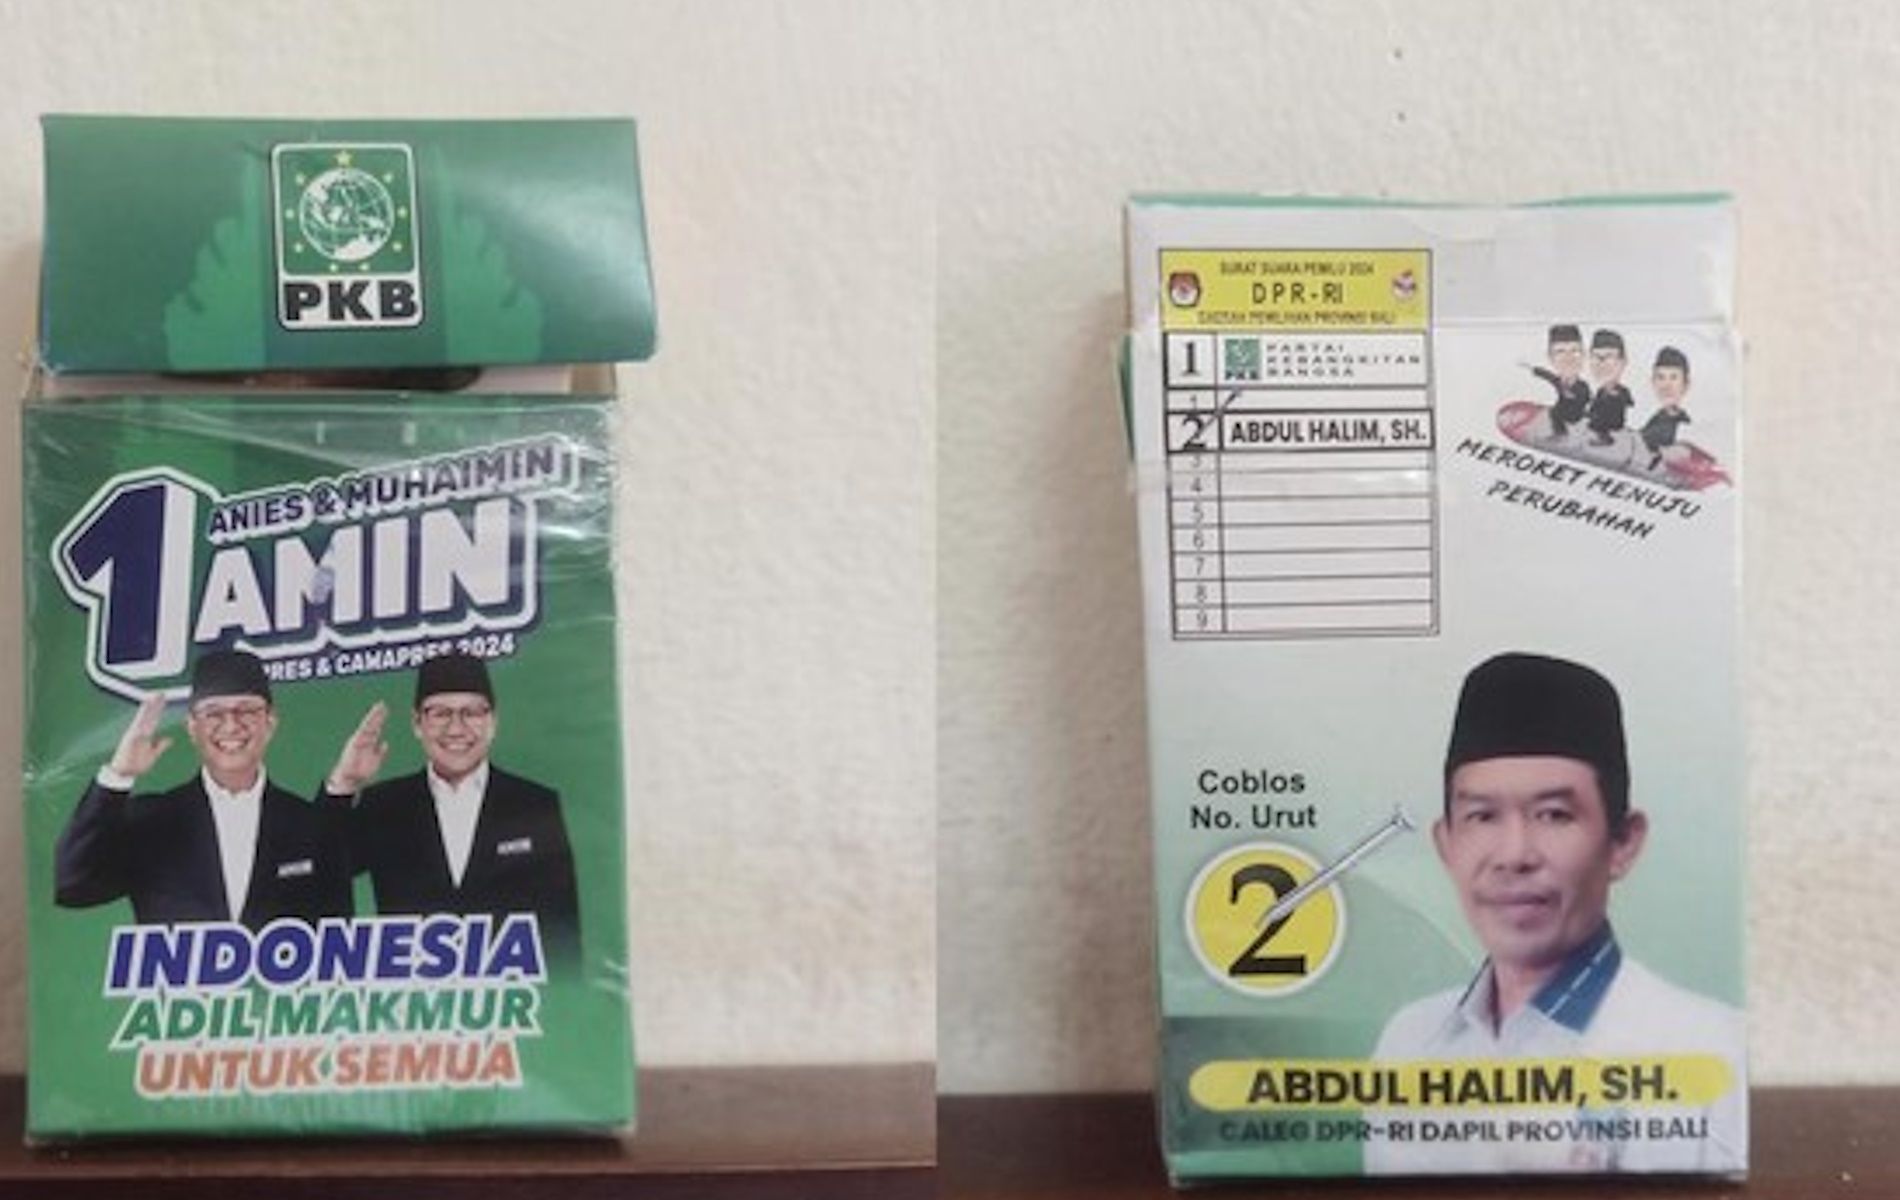 Rokok bergambar capres dan cawapres nomor urut 1 Anies Baswedan-Muhaimin Iskandar (AMIN). Di belakang bungkus rokok terdapat foto calon legislatif (caleg) DPR RI beredar di Jembrana, Bali. 